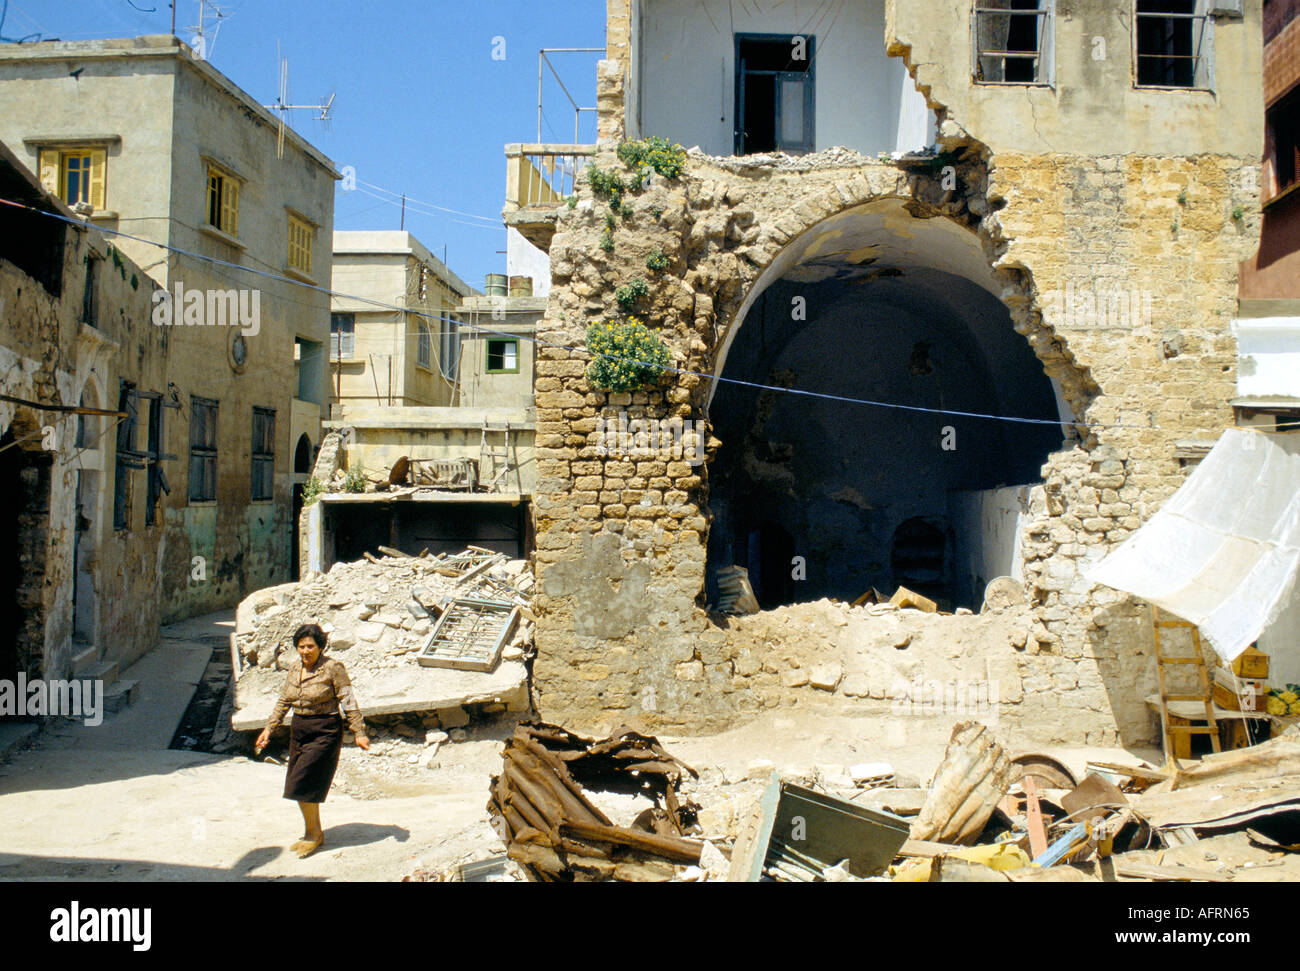 Tyr Sud Liban 1980. Une bombe israélienne a endommagé le bâtiment du centre-ville. Liban Sud, guerres du Moyen-Orient années 1980 HOMER SYKES Banque D'Images